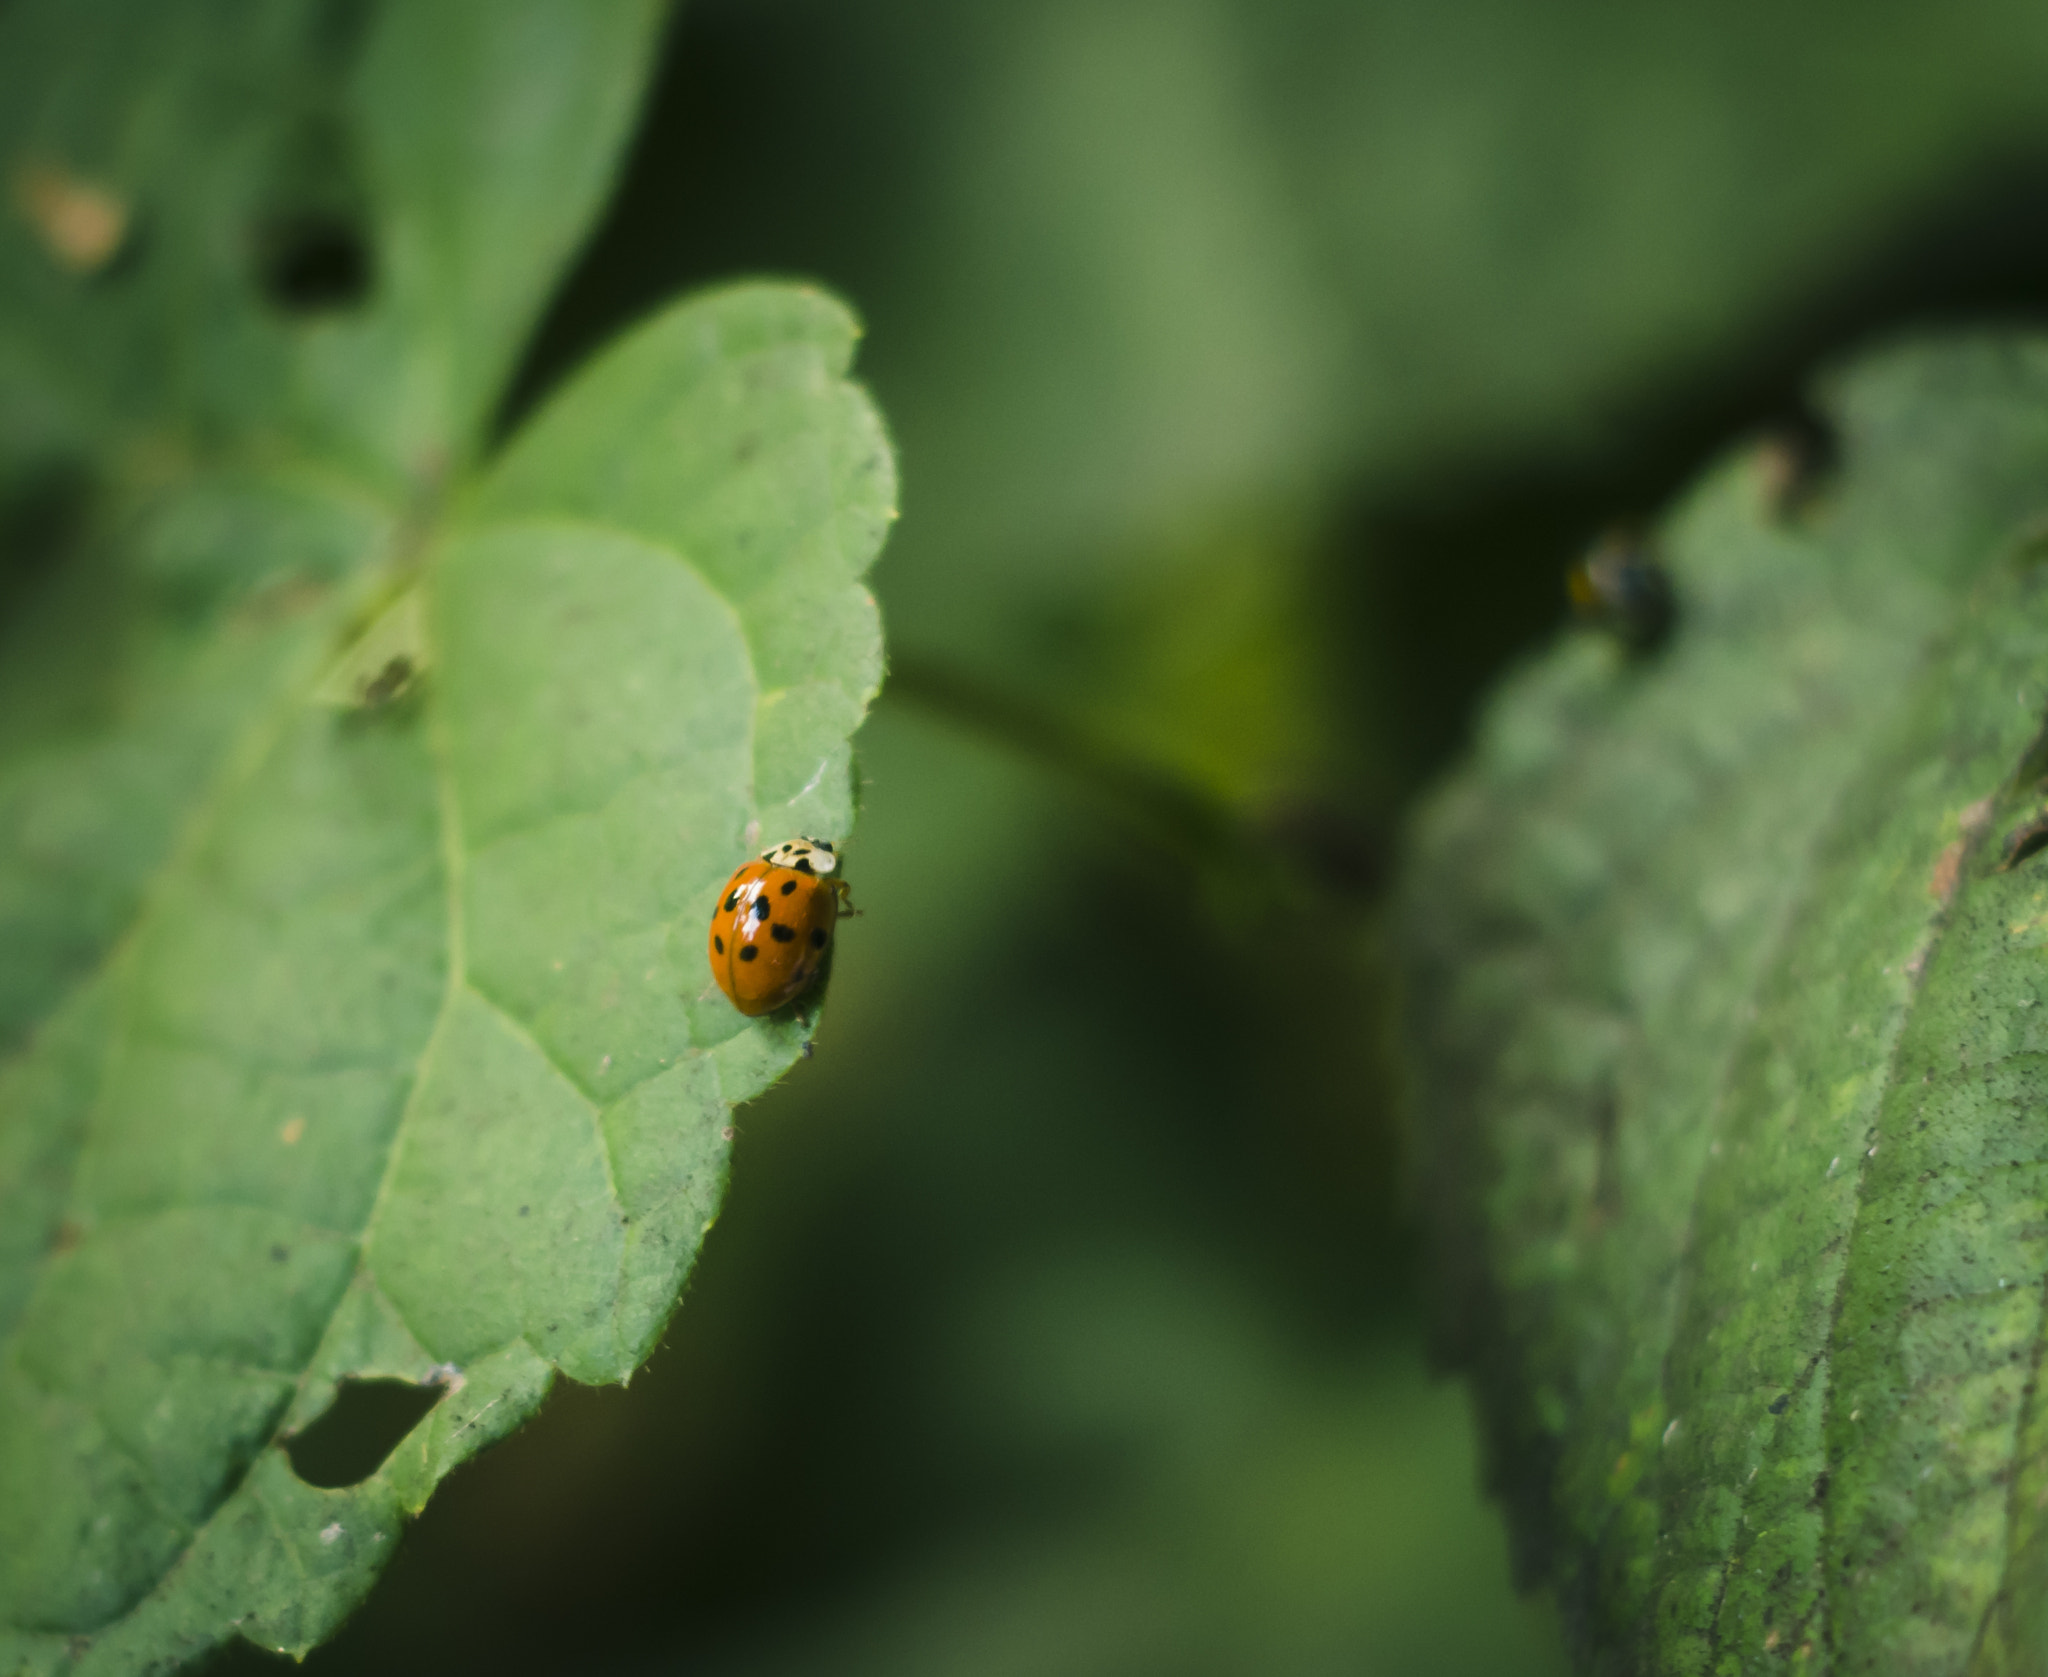 Pentax K-S2 sample photo. Ladybug photography